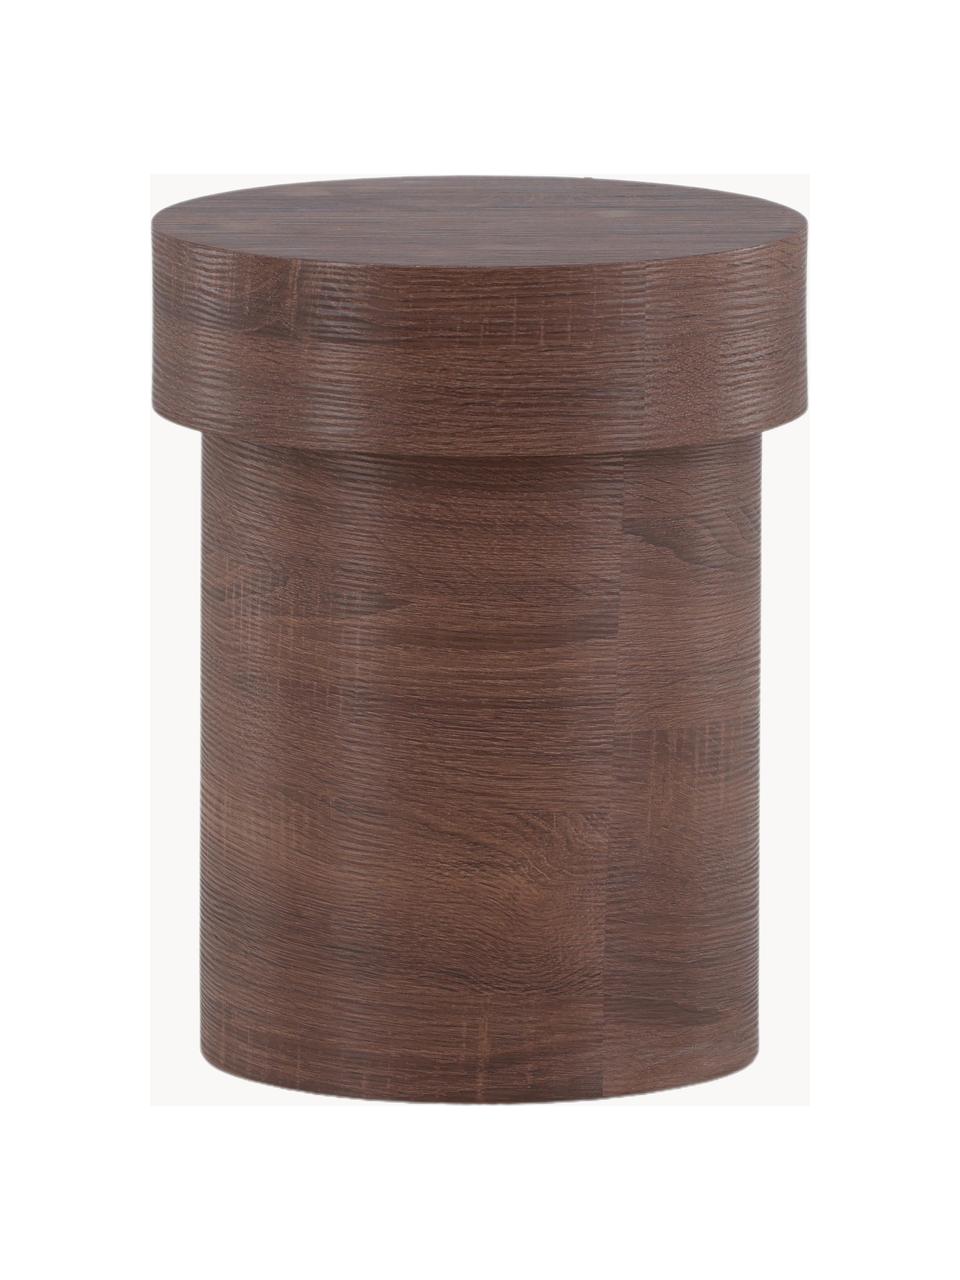 Kulatý dřevěný odkládací stolek Malung, Dřevovláknitá deska střední hustoty (MDF) s papírovým laminátem, Dřevo, tmavě hnědá, laminováno, Ø 35 cm, V 45 cm